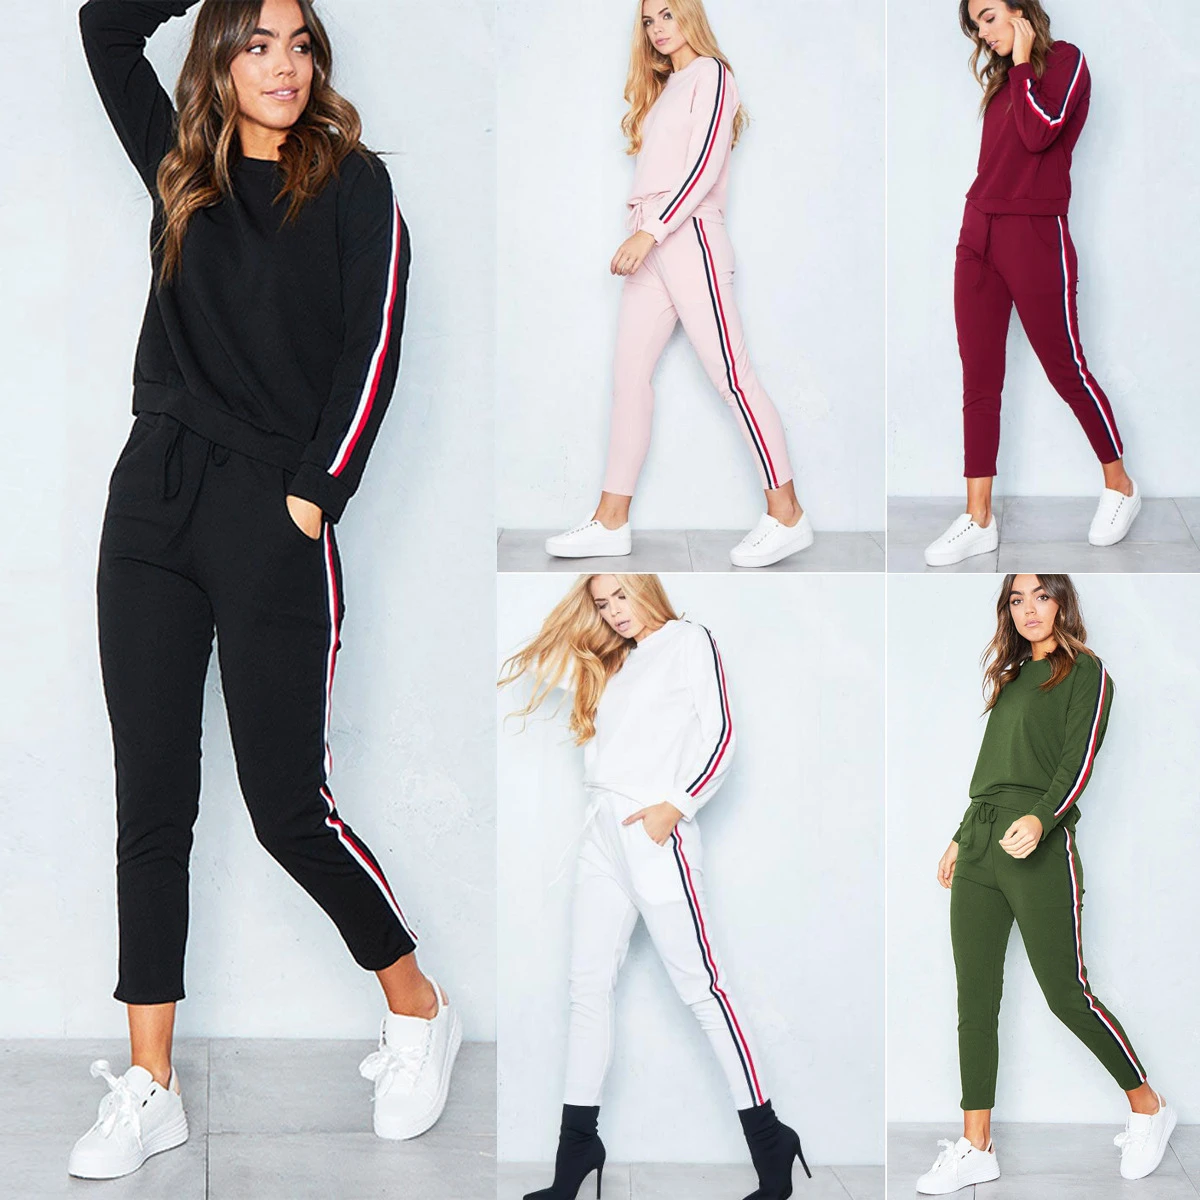 Chándal 2 piezas conjunto de las mujeres 2018 Hoodies Crop Top sudadera + pantalones encapuchados 2 unidades Sets mujeres ropa trajes de mujer| - AliExpress